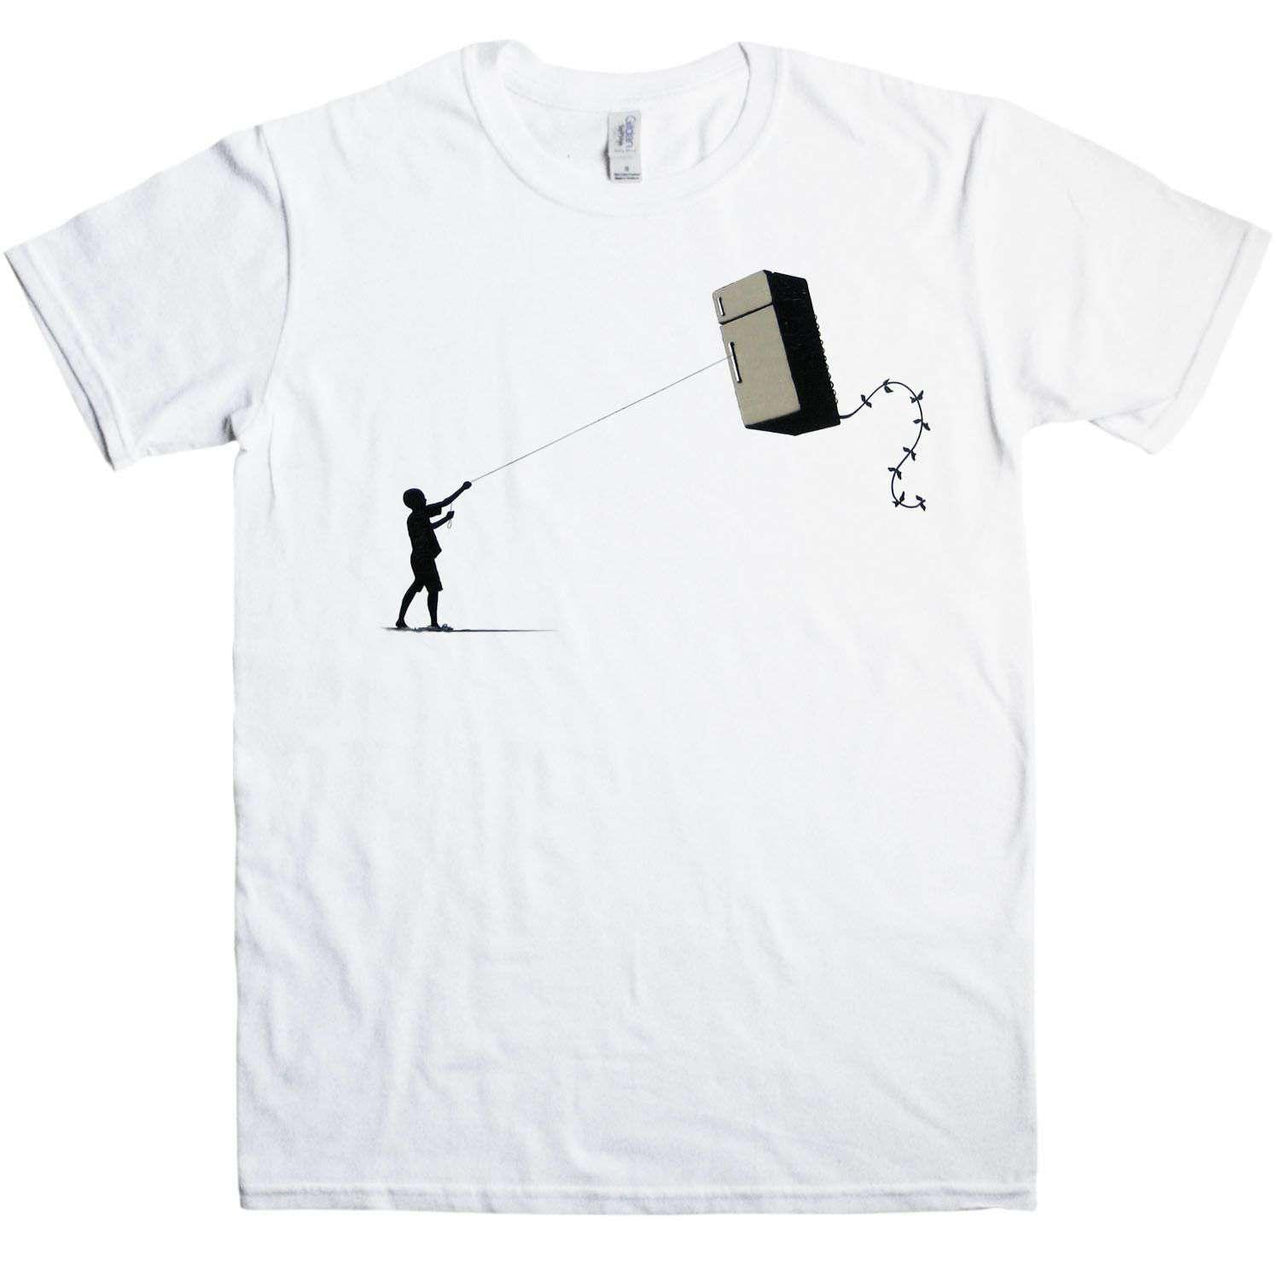 Banksy T Shirt - Fridge Kite